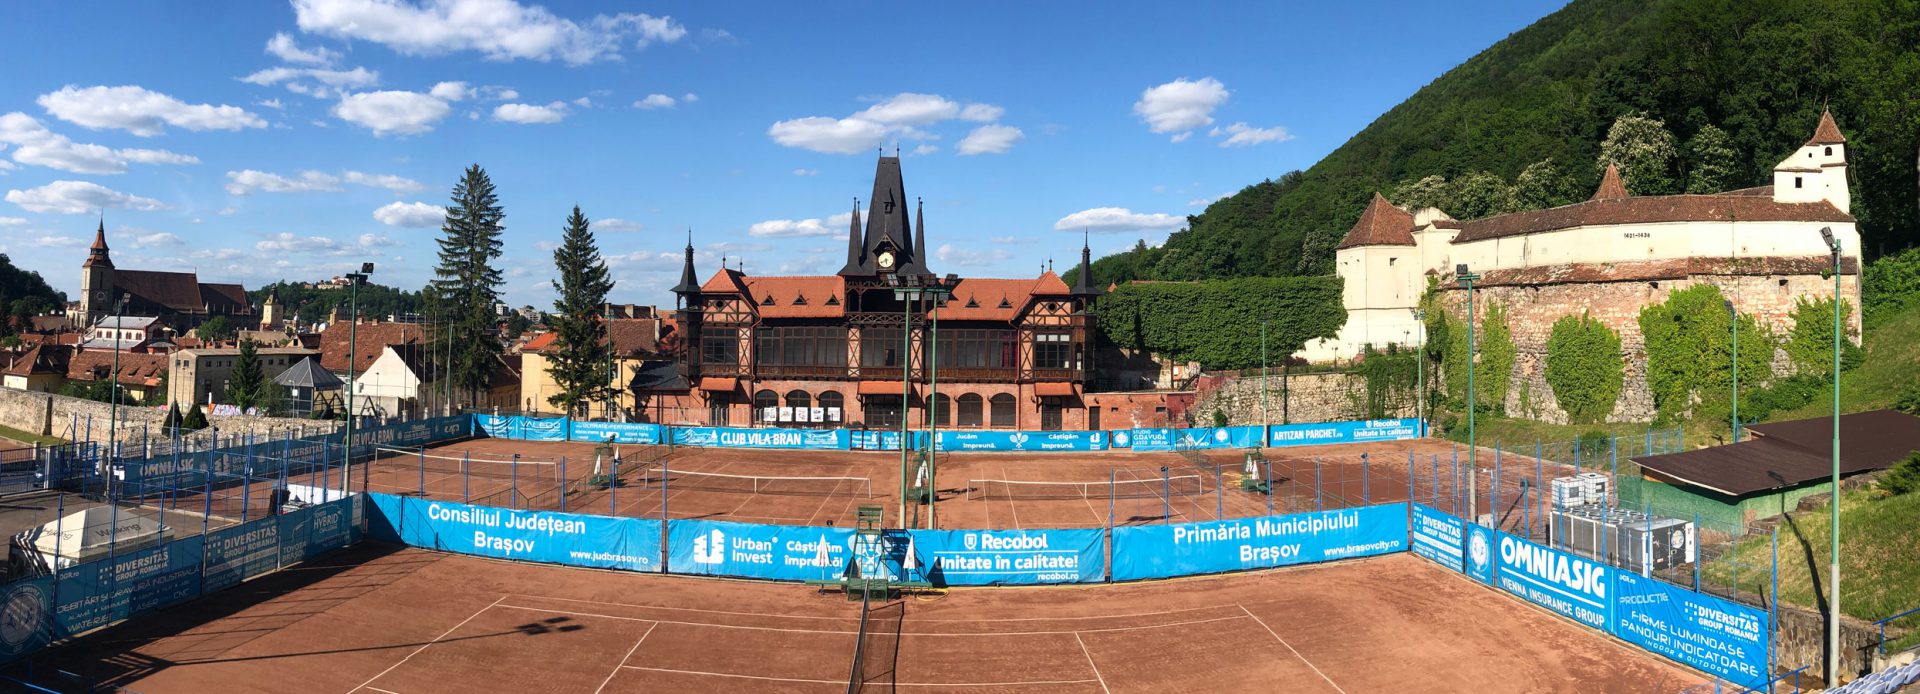 Buna Ziua Braşov: La Olimpia, în vara lui 2021. Primul Muzeu dedicat sportului şi turismului montan din România se deschide la Braşov